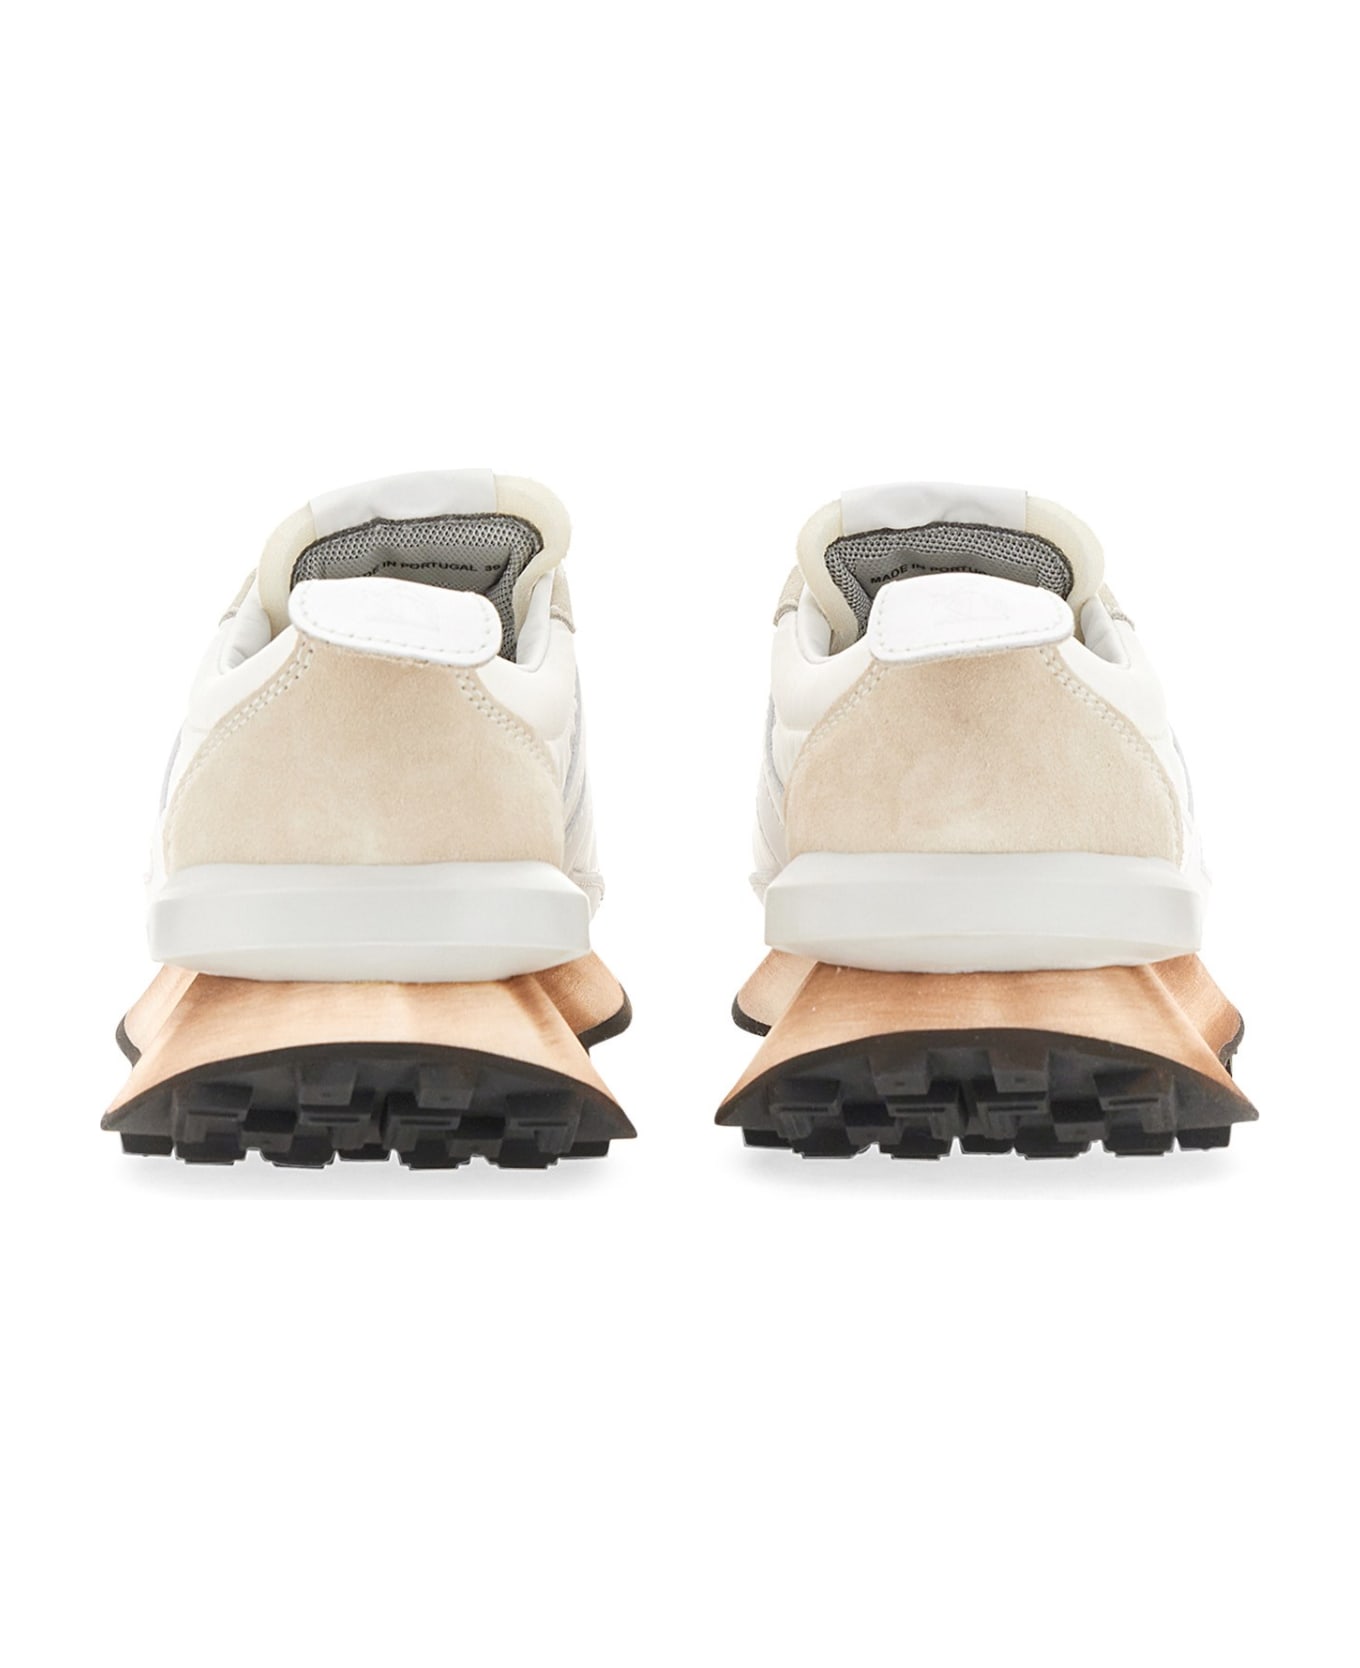 Lanvin Nylon Bumpr Sneaker - Optic White スニーカー